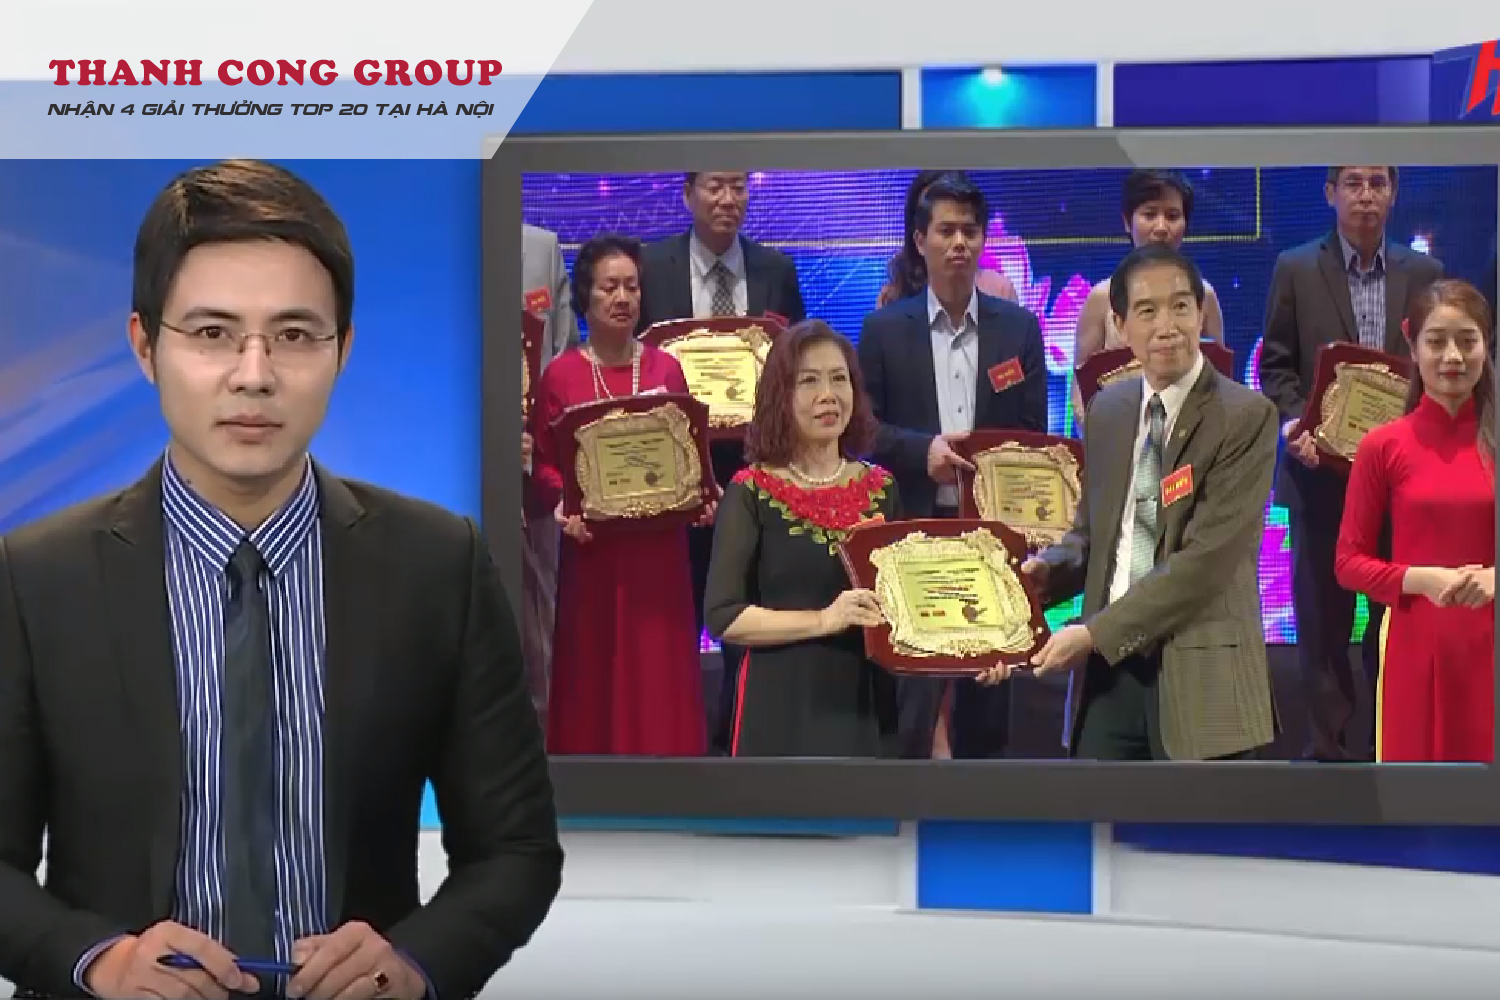 Tập đoàn Thành Công nhận 4 giải thưởng vàng Việt Nam 2019